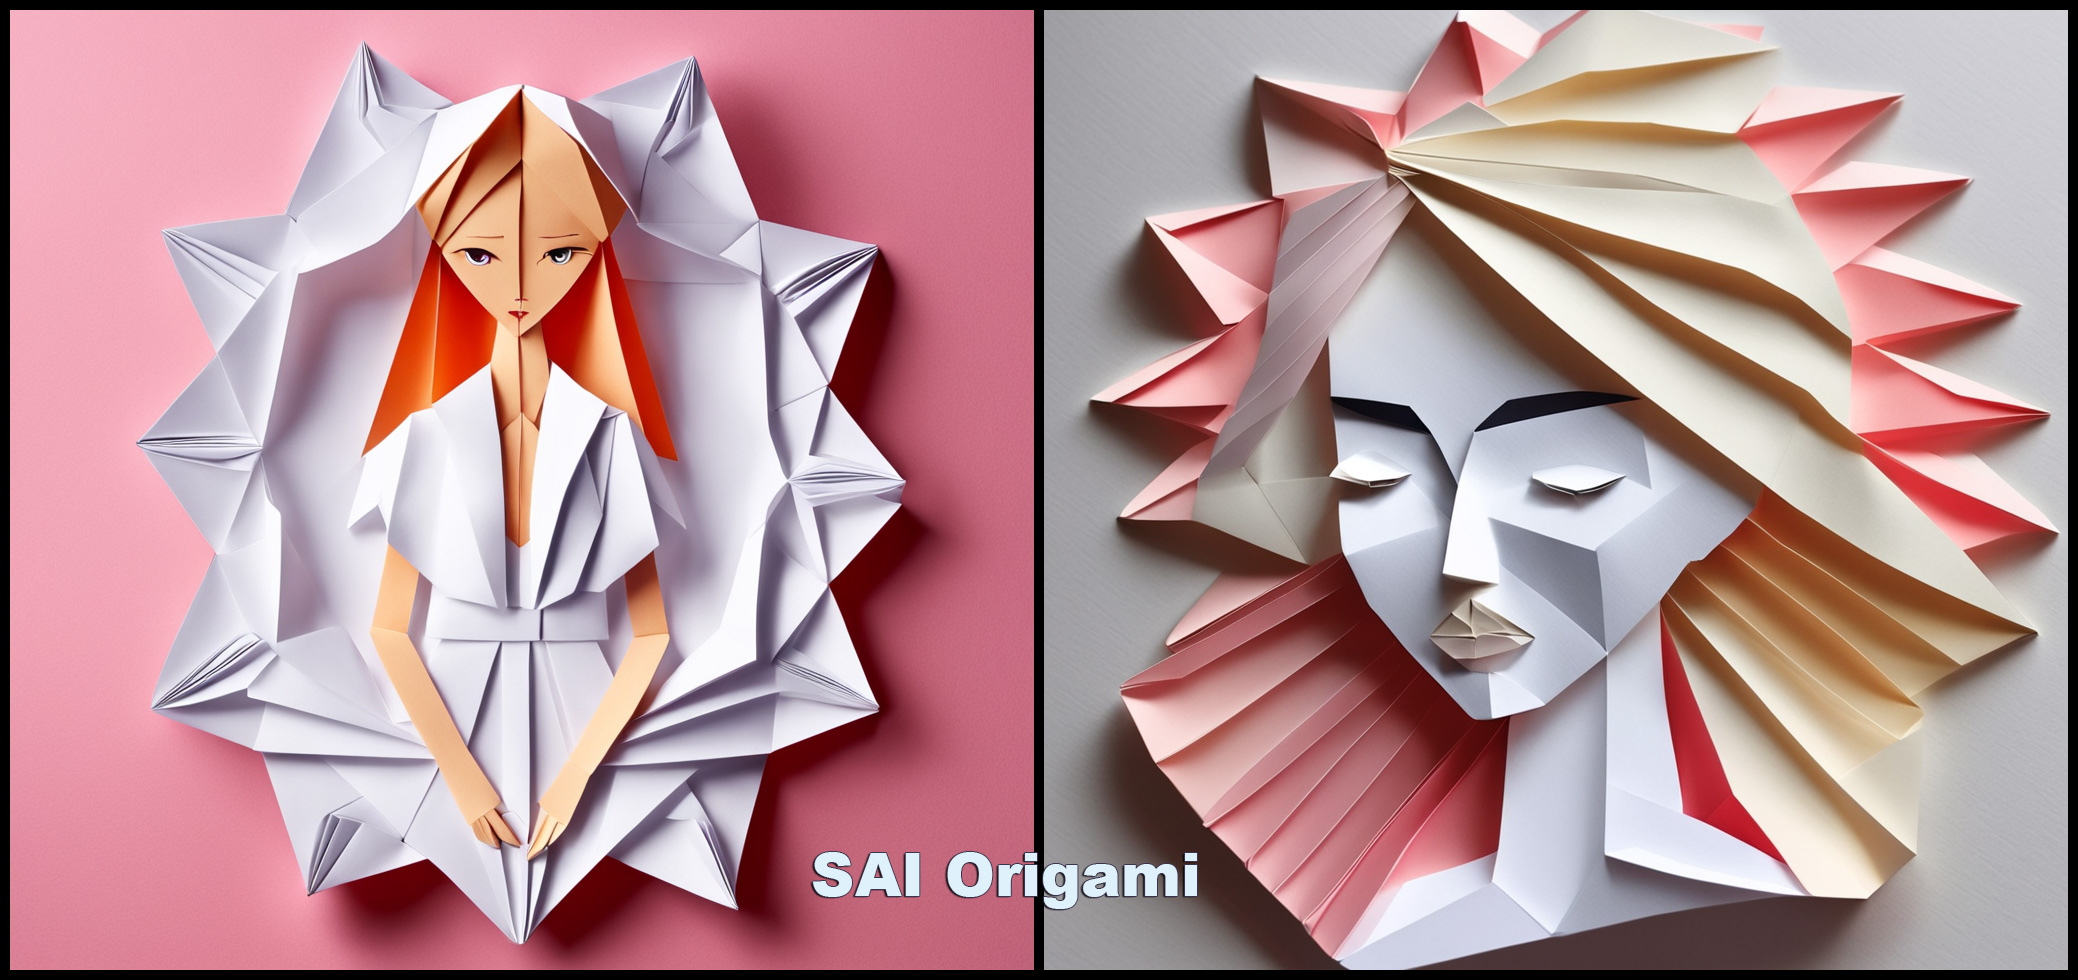 fooocus风格之SAI-Origami